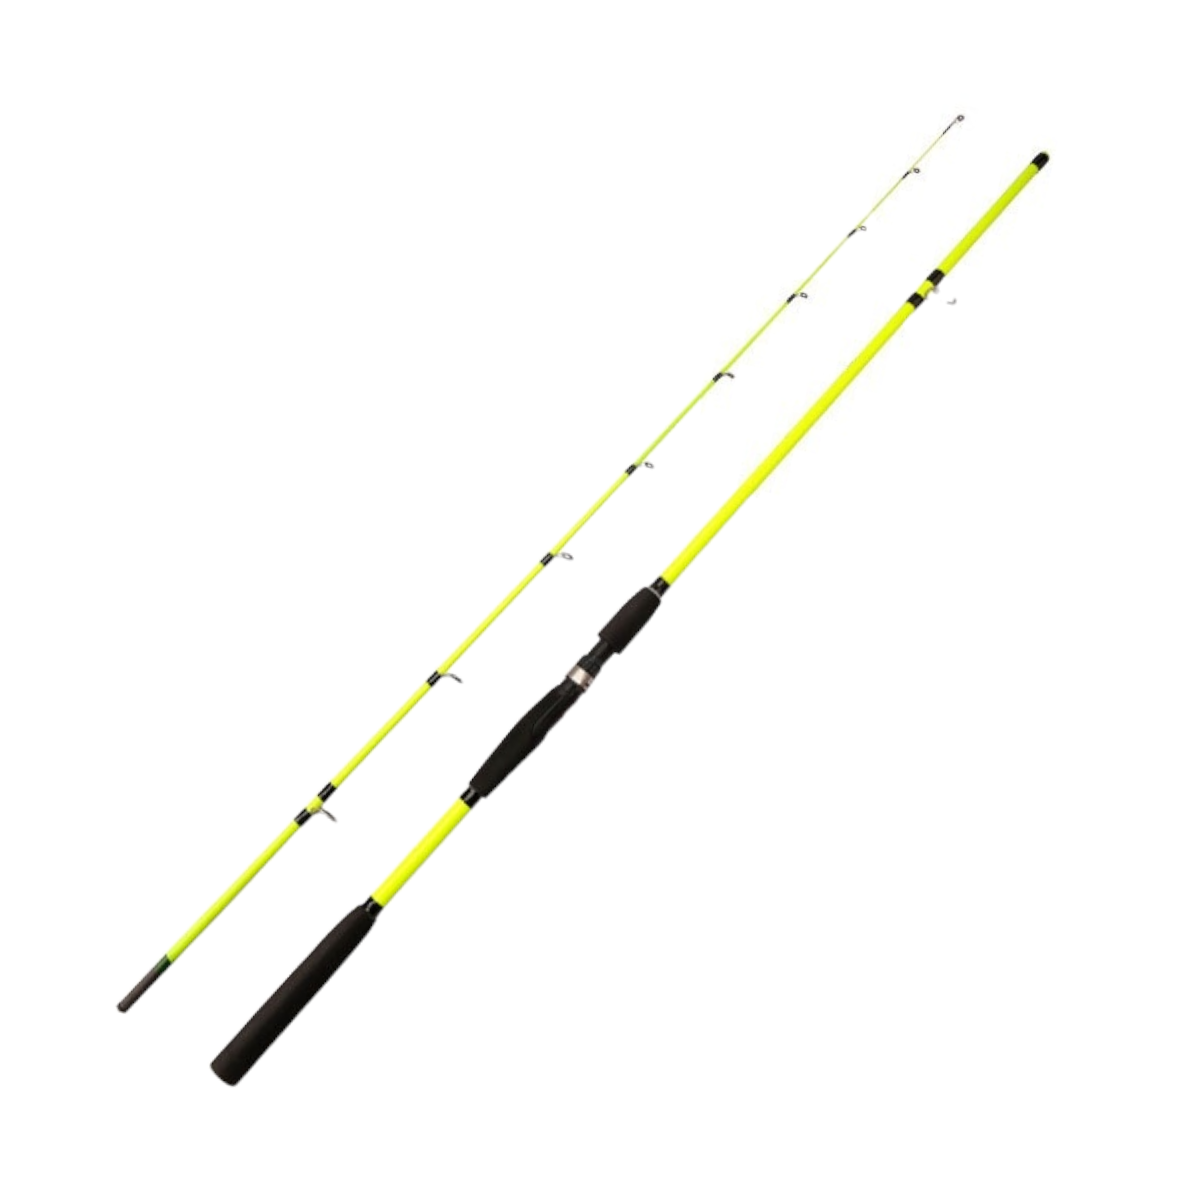 Caña pescar fibra carbono flexible amarilla 180 cm CÑS35